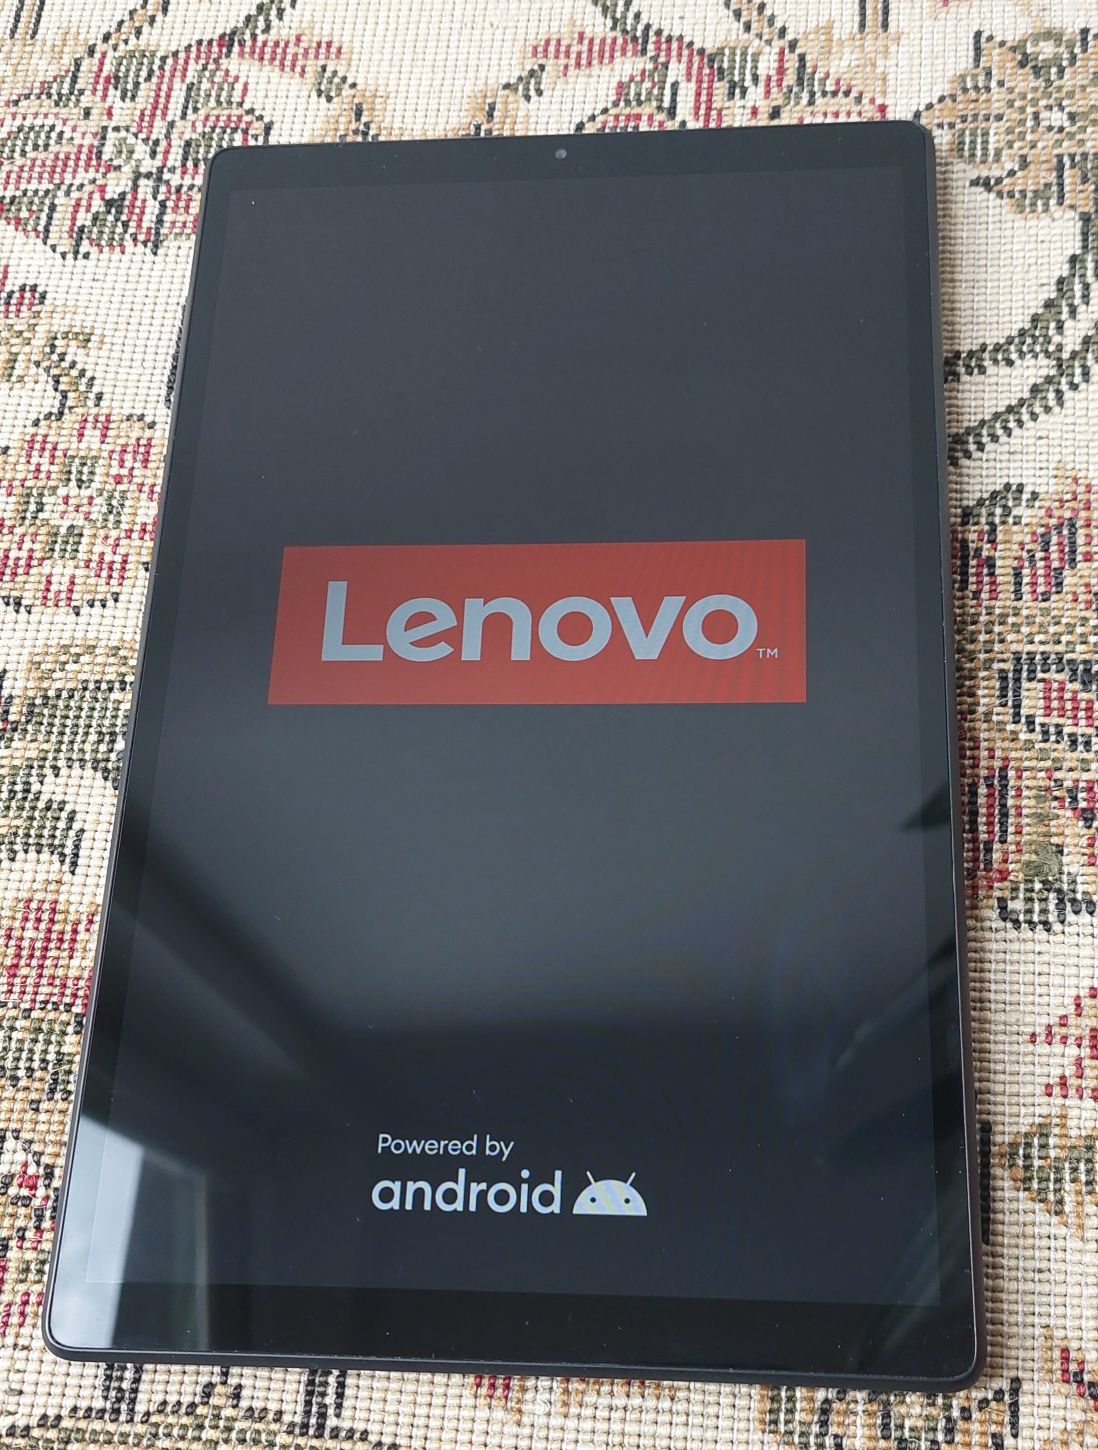 Tablet Lenovo Tab M10 HD